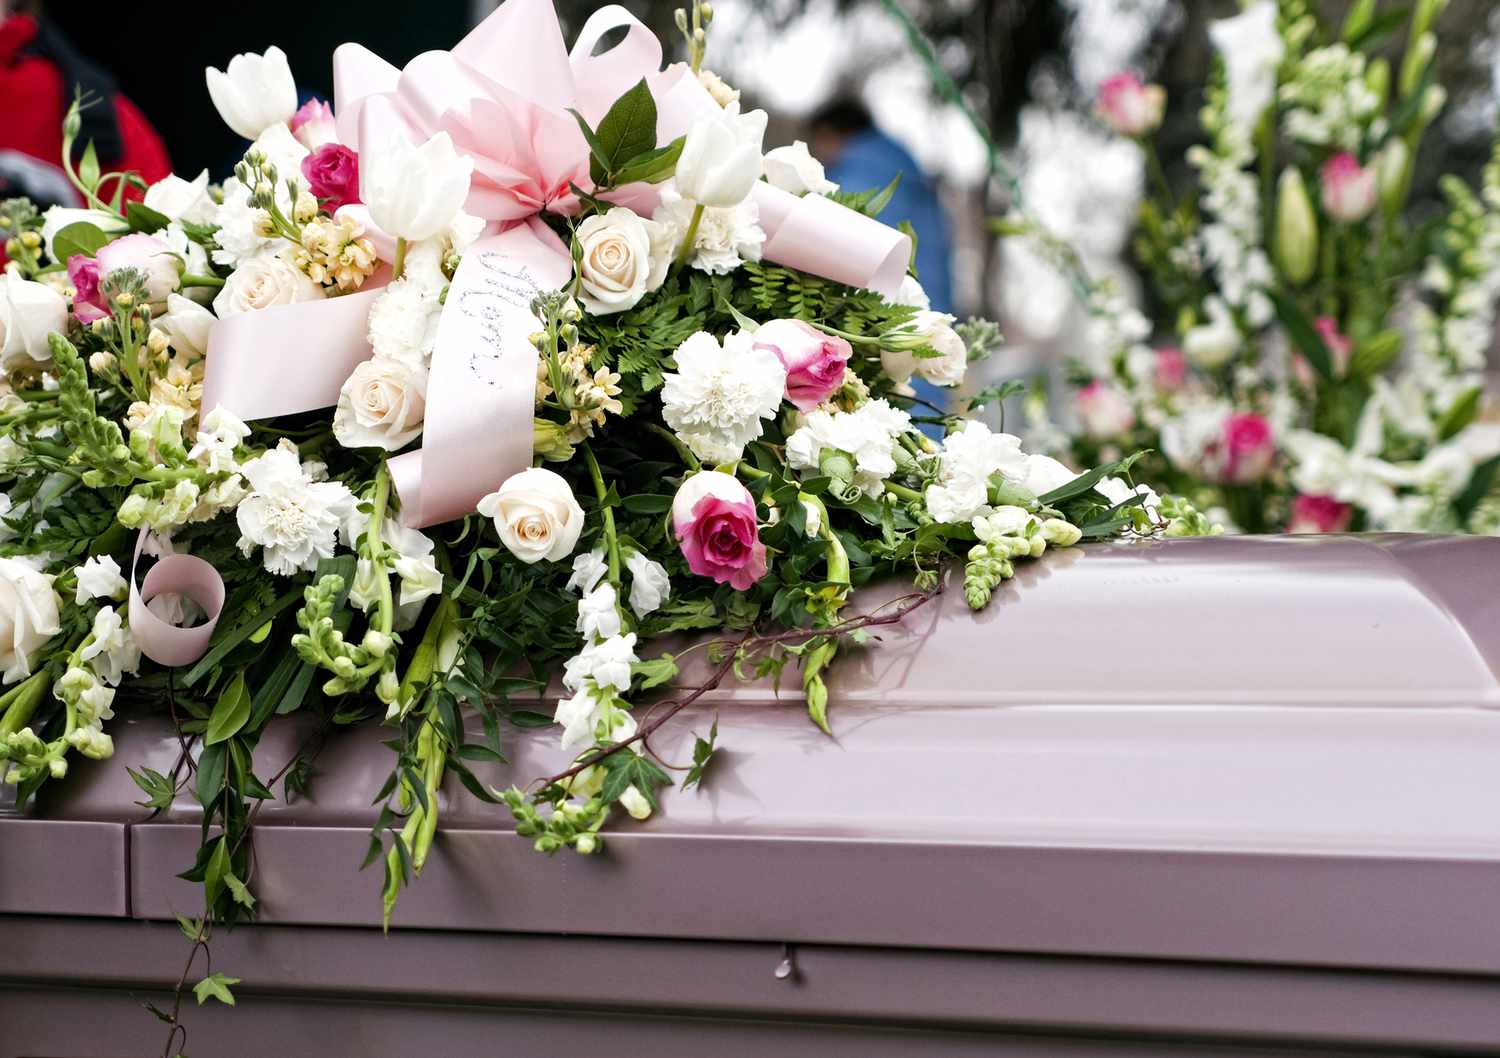 funeral-flowers-on-casket